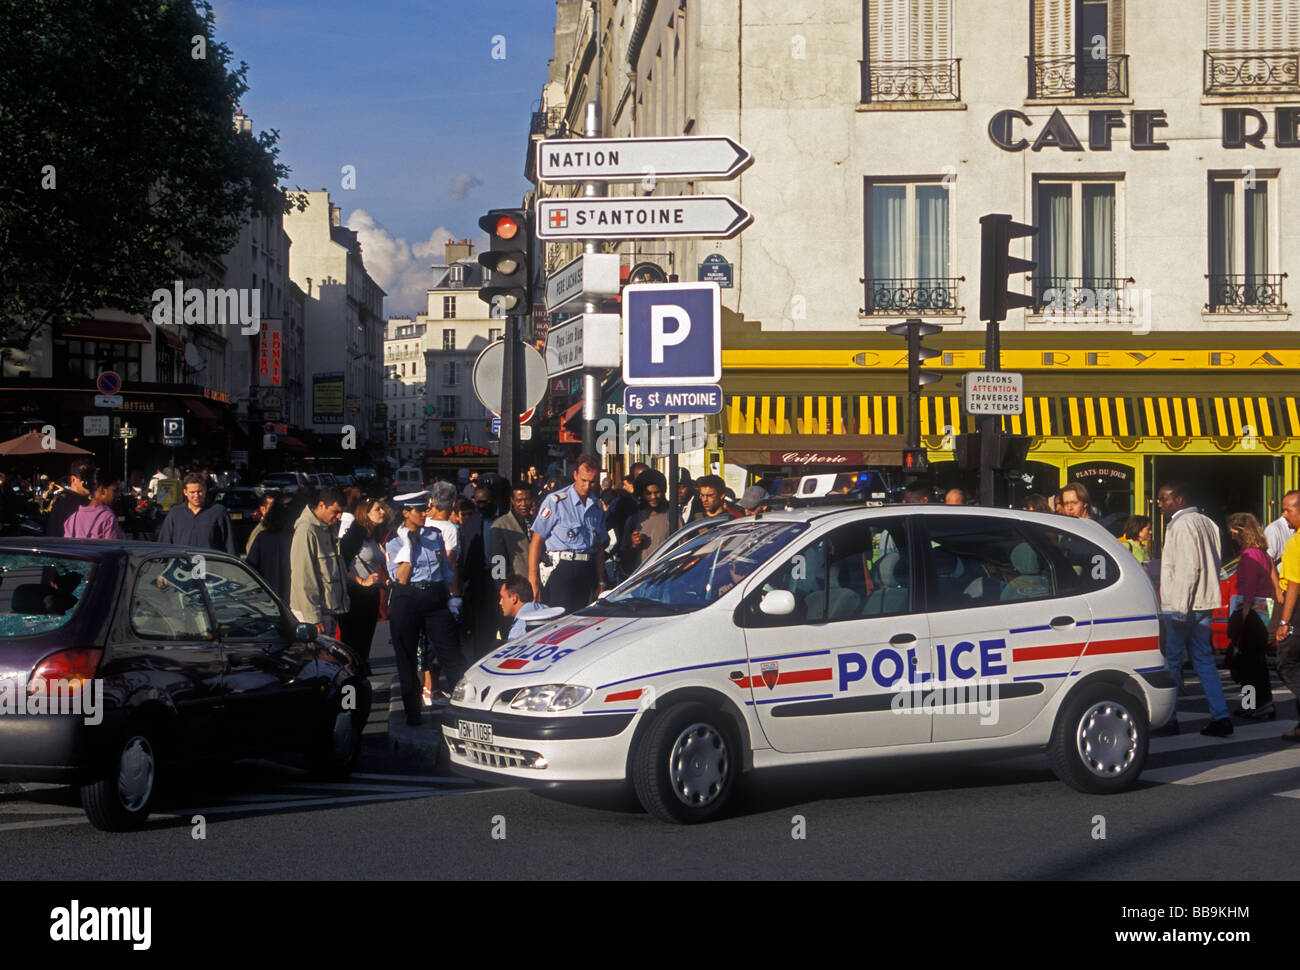 La police française, les policiers, l'action de la police, l'arrestation d'un criminel, voiture de police, à la place de la Bastille, Paris, Ile-de-France, France, Europe Banque D'Images